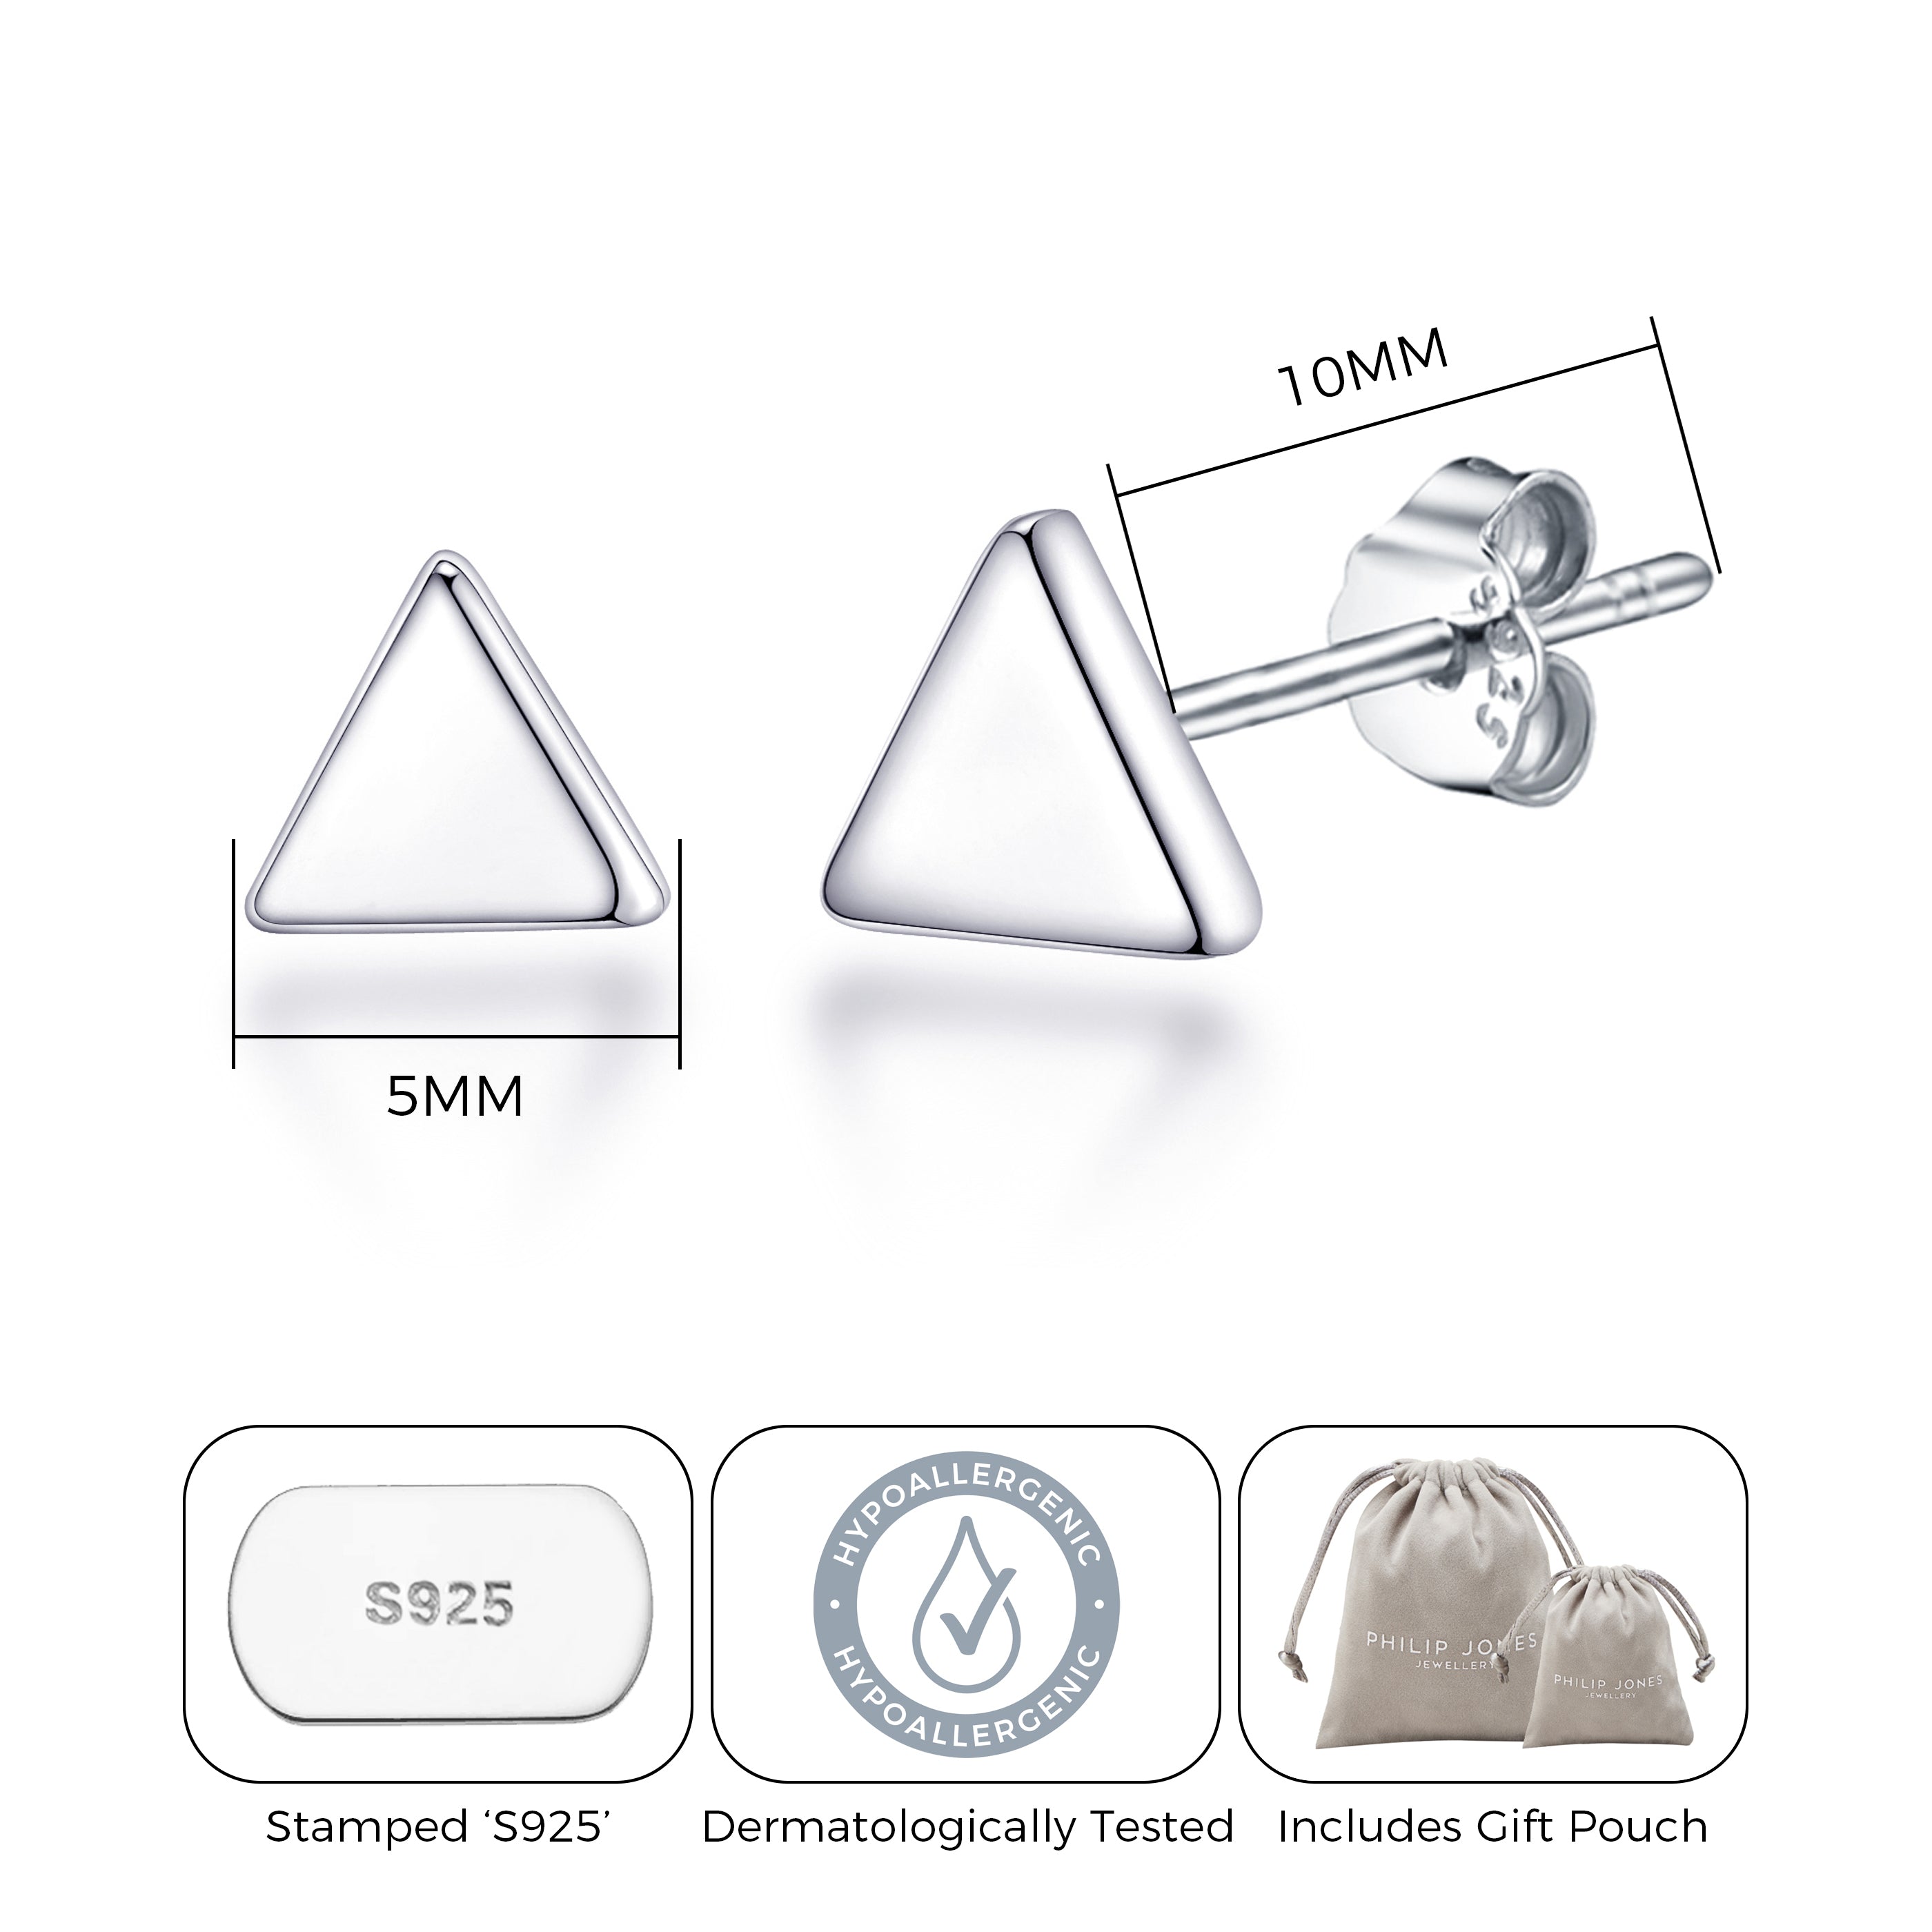 Sterling Silver Triangle Earrings